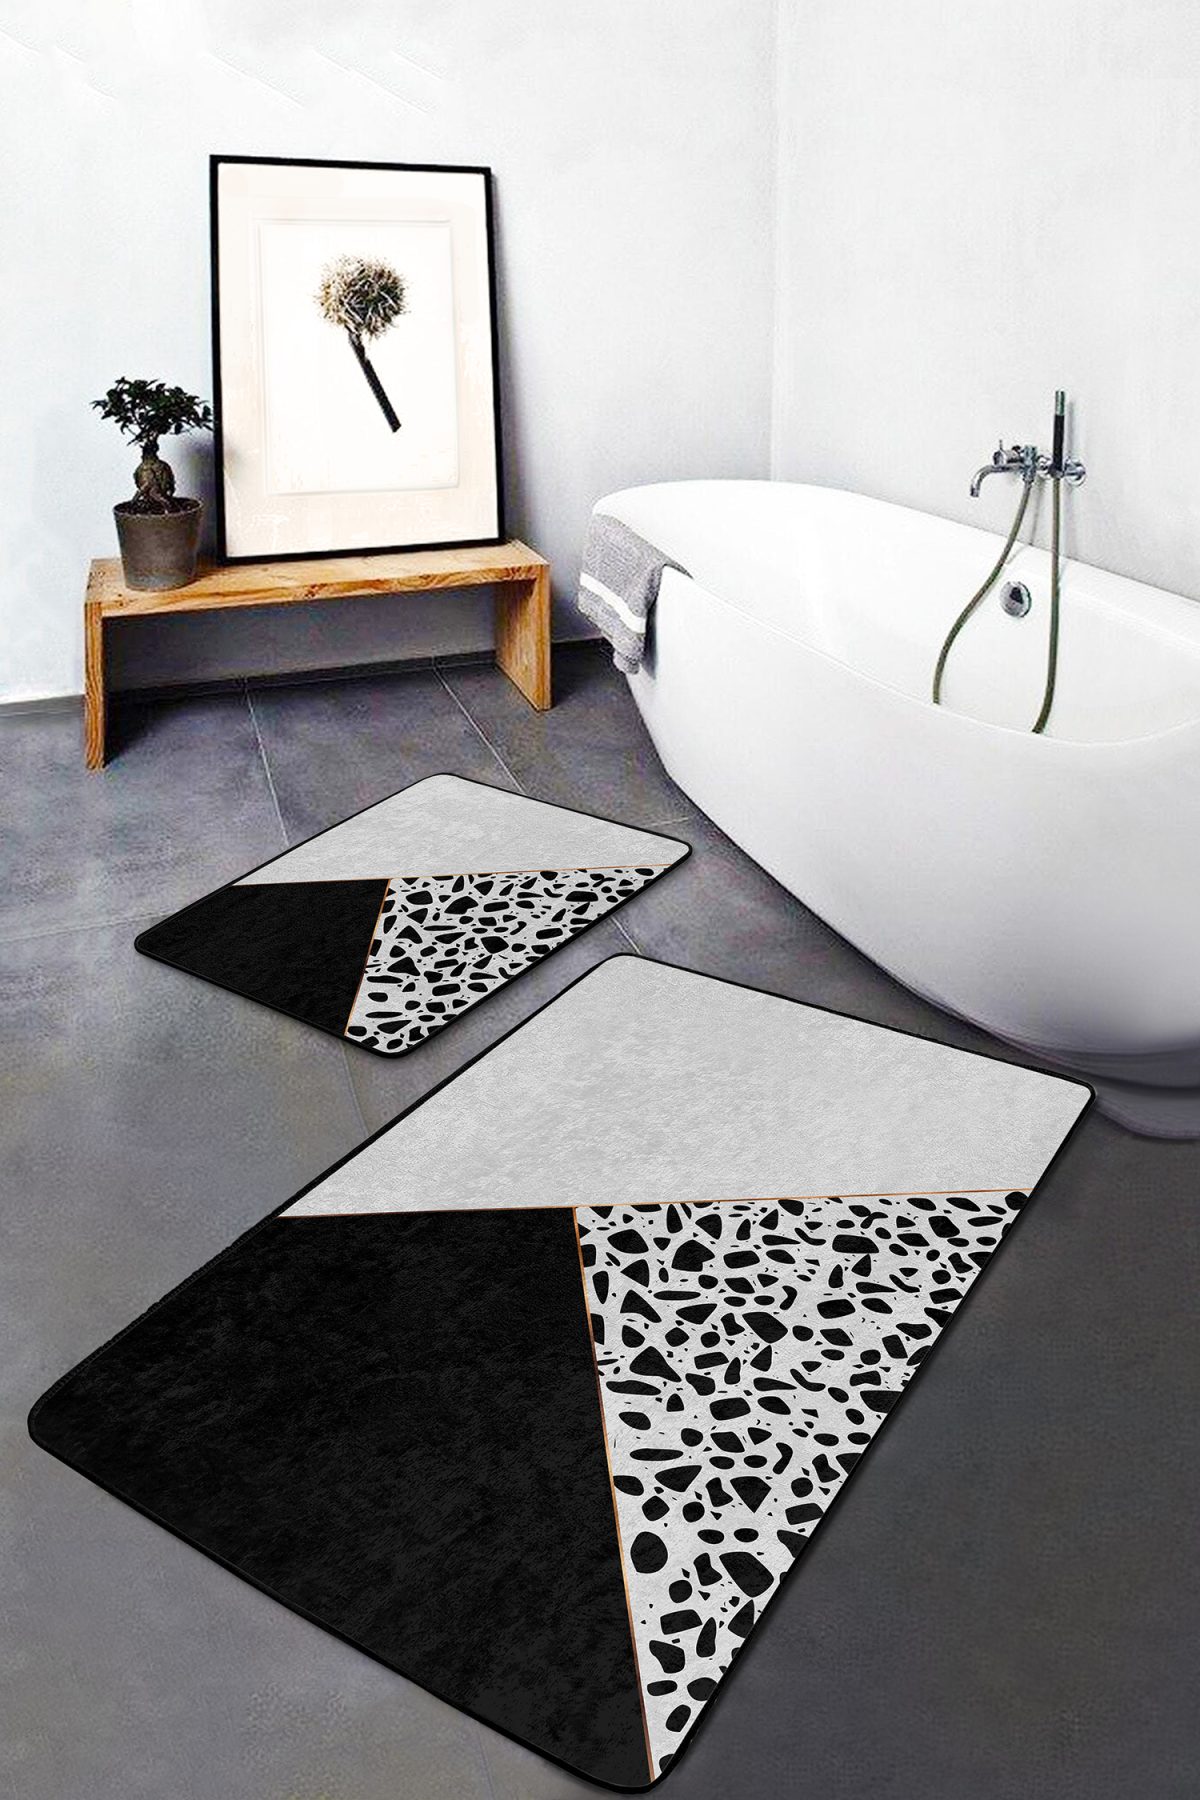 Siyah Beyaz Düz Renkli Taş Tasarımlı 2'li Kaymaz Tabanlı Banyo & Mutfak Paspas Takımı Realhomes